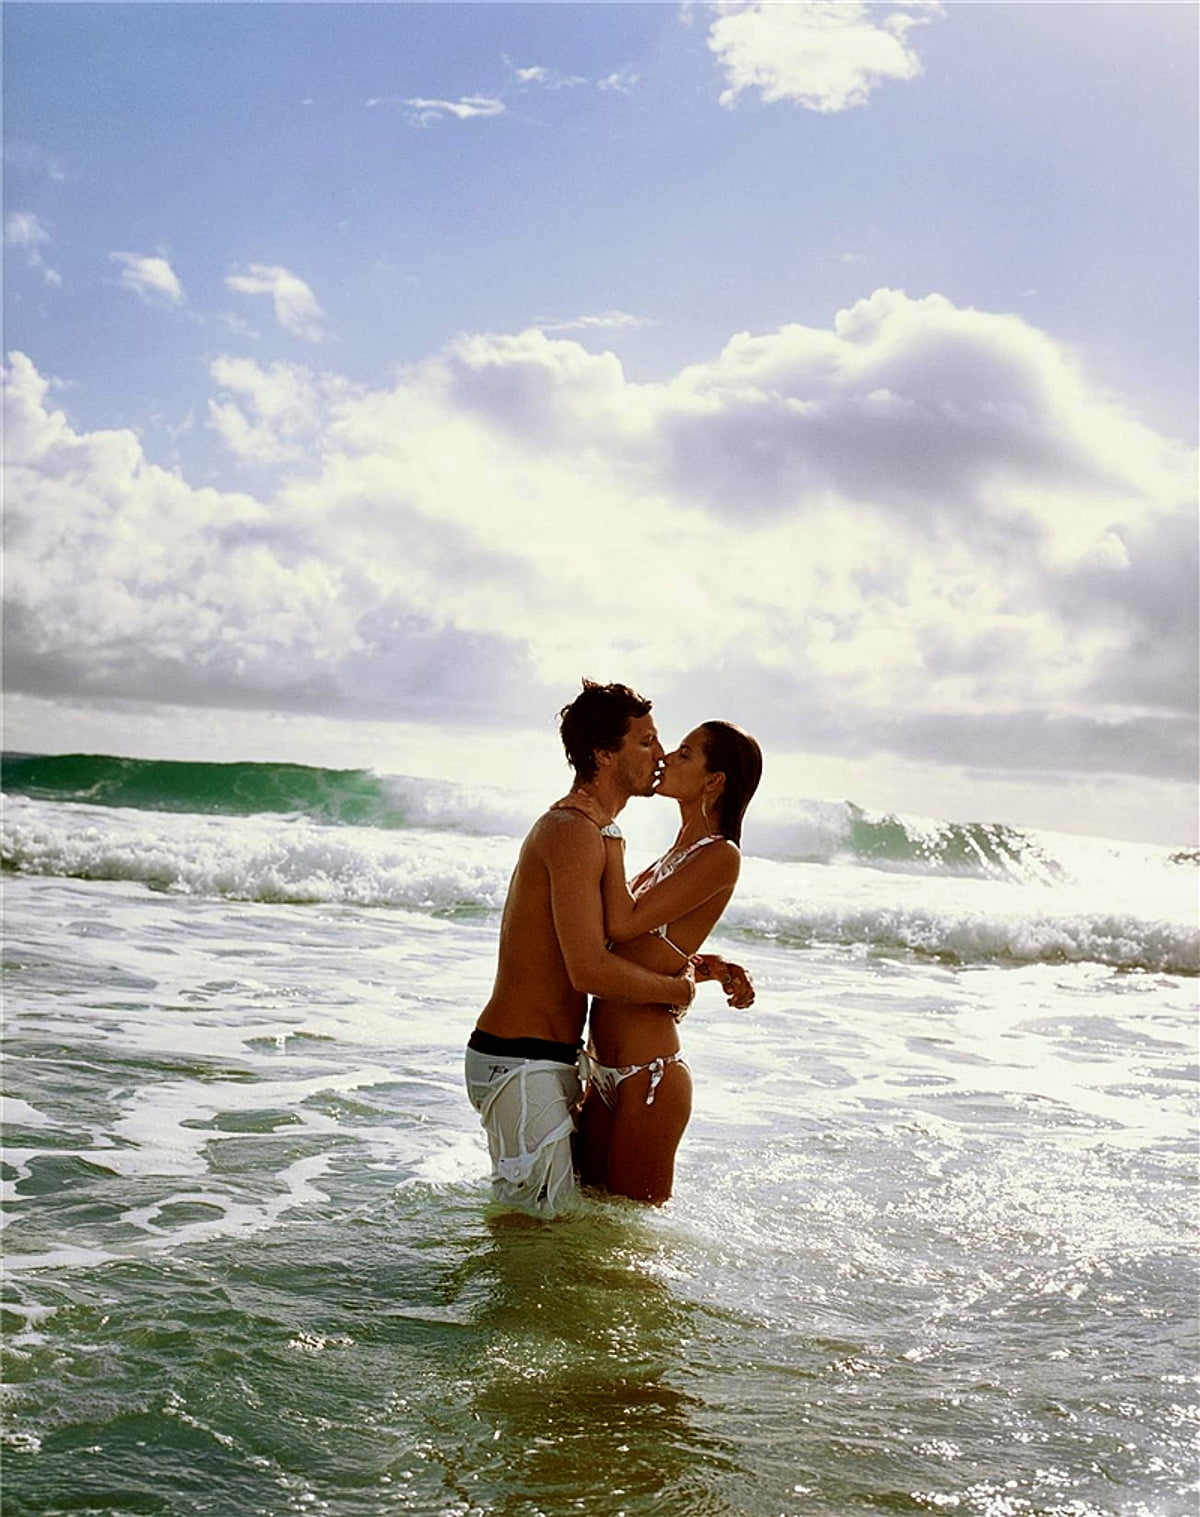 Молодая пара голой стоит на общественном пляже фото